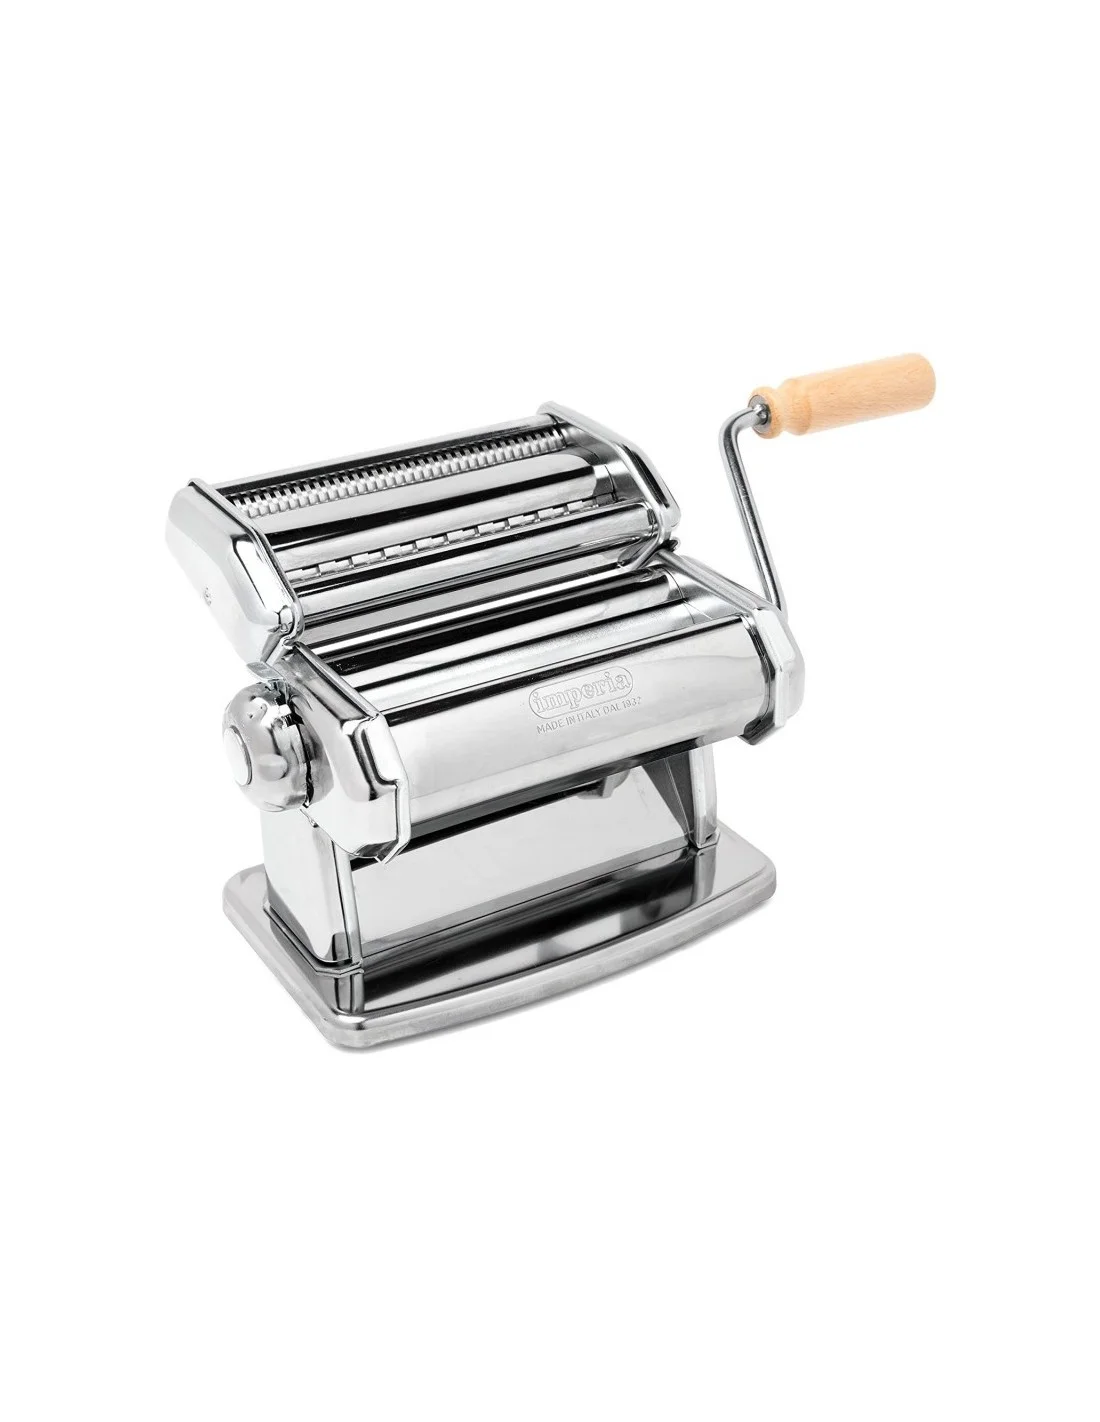 Manual pasta machine SP150 IMPERIA